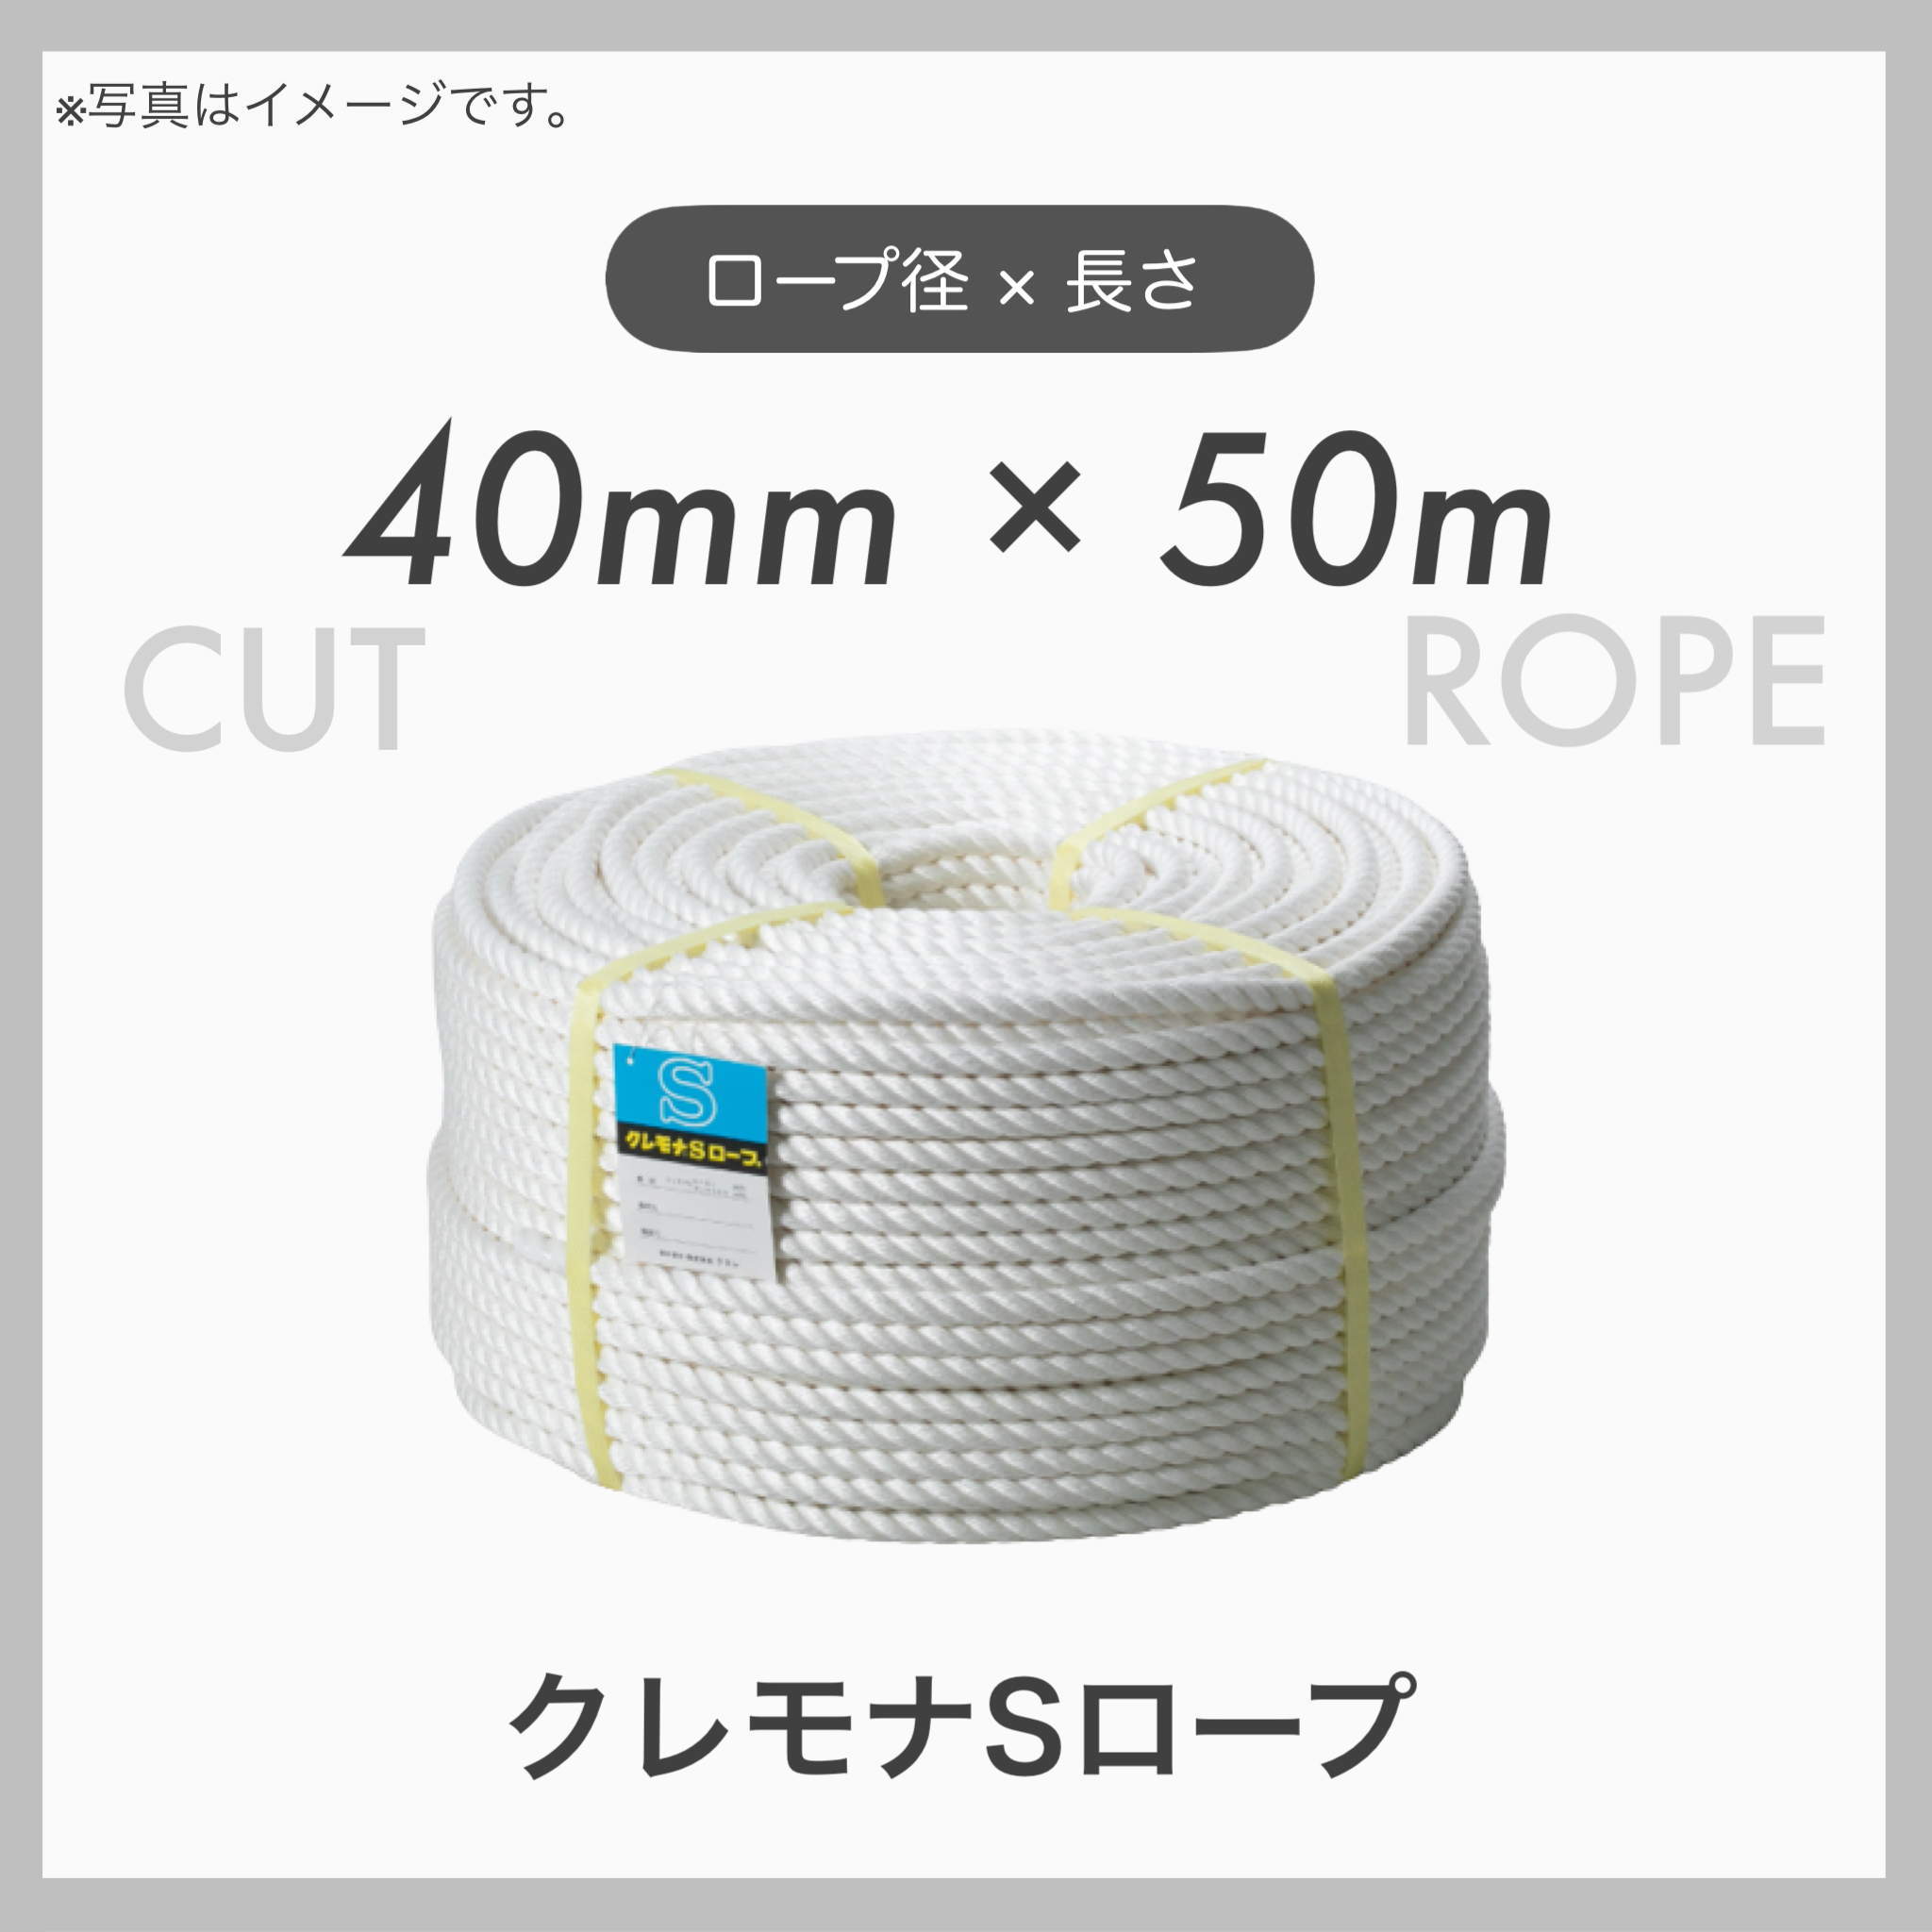  クレモナロープ クレモナSロープ 繊維ロープ 合繊ロープ 40mm×50m 直径40mm 長さ50m